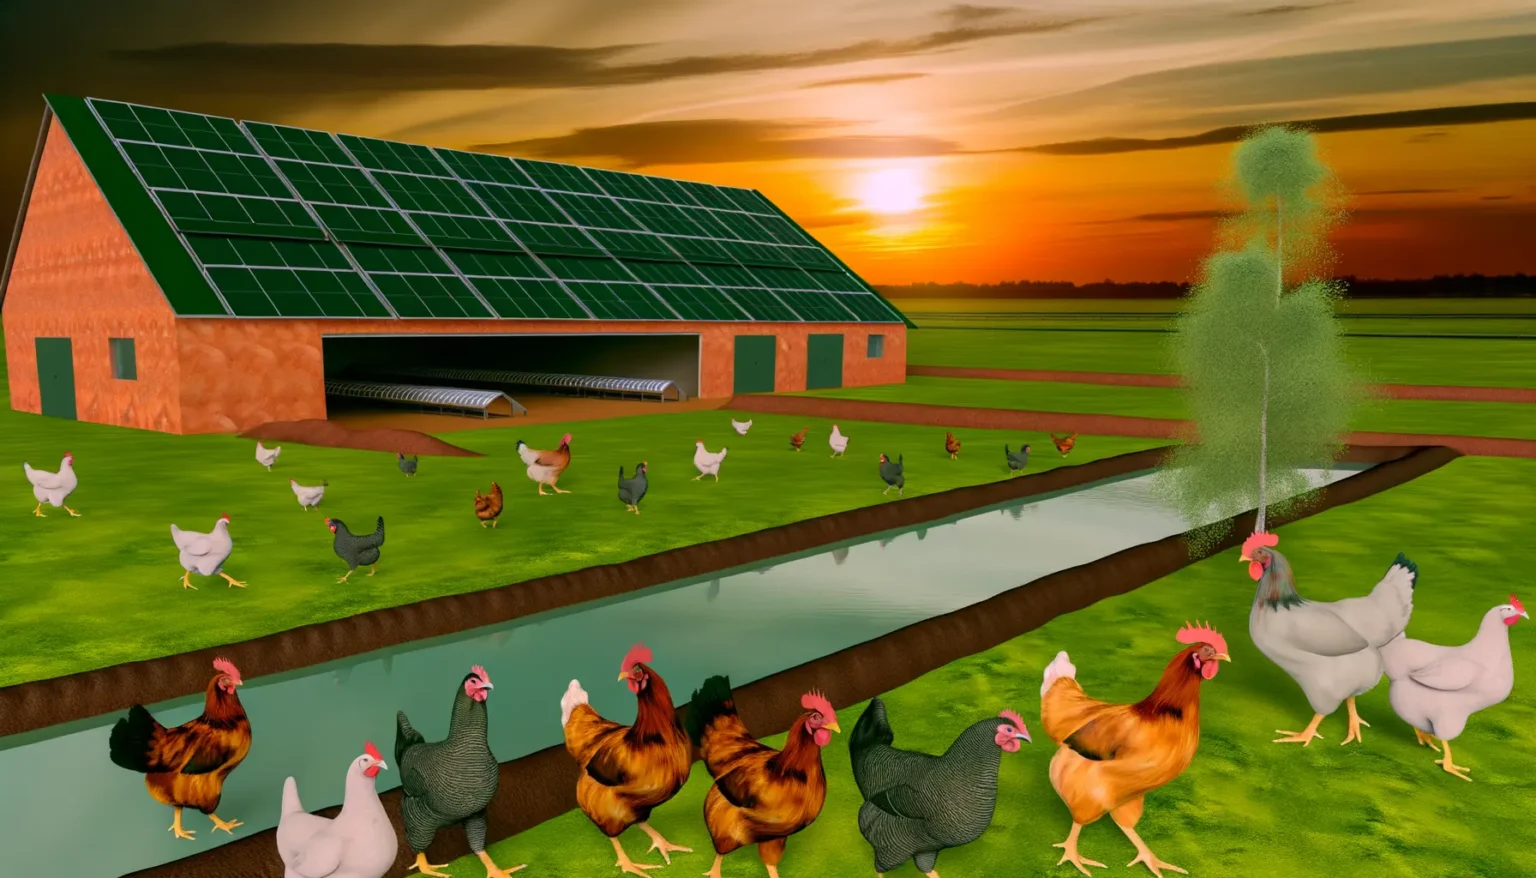 Digitale Illustration einer ländlichen Szene bei Sonnenuntergang mit einem mit Solarmodulen bedeckten Stall, mehreren verschiedenfarbigen Hühnern sowohl im Vorder- als auch im Hintergrund und einem kleinen Teich, neben dem ein großer Baum steht.